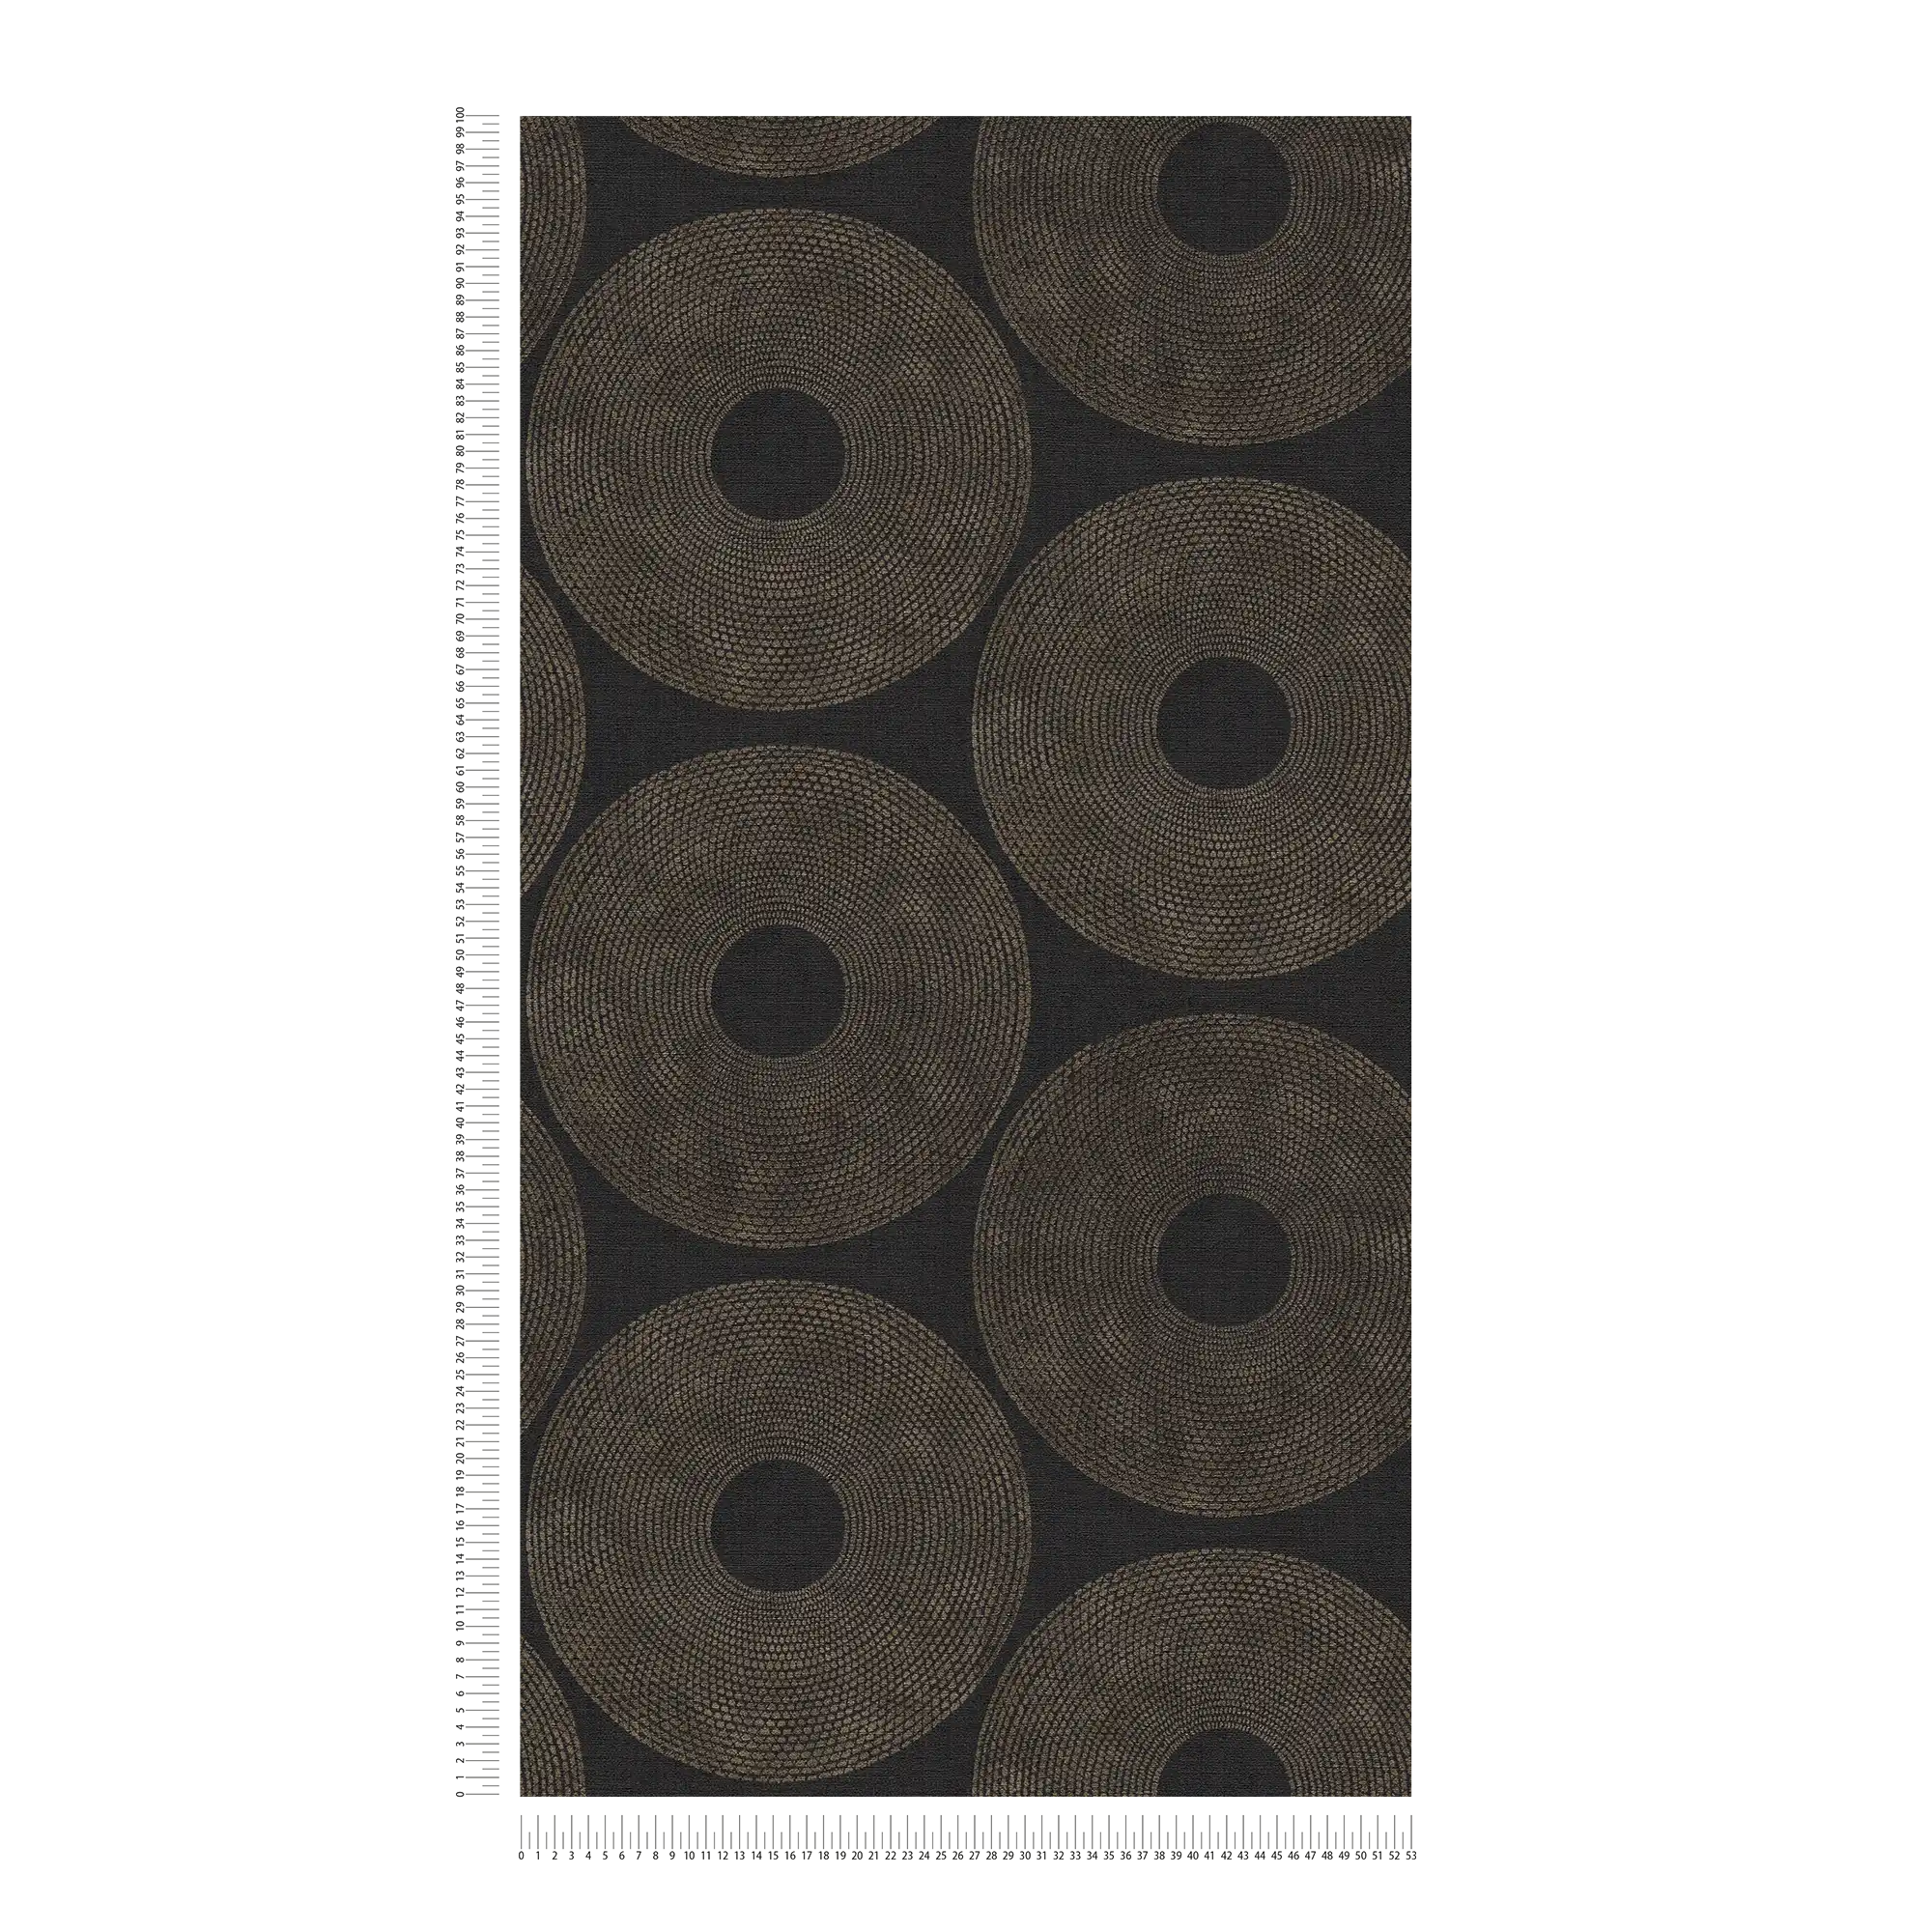             Ethno Tapete Kreise mit Strukturdesign – Grau, Braun
        